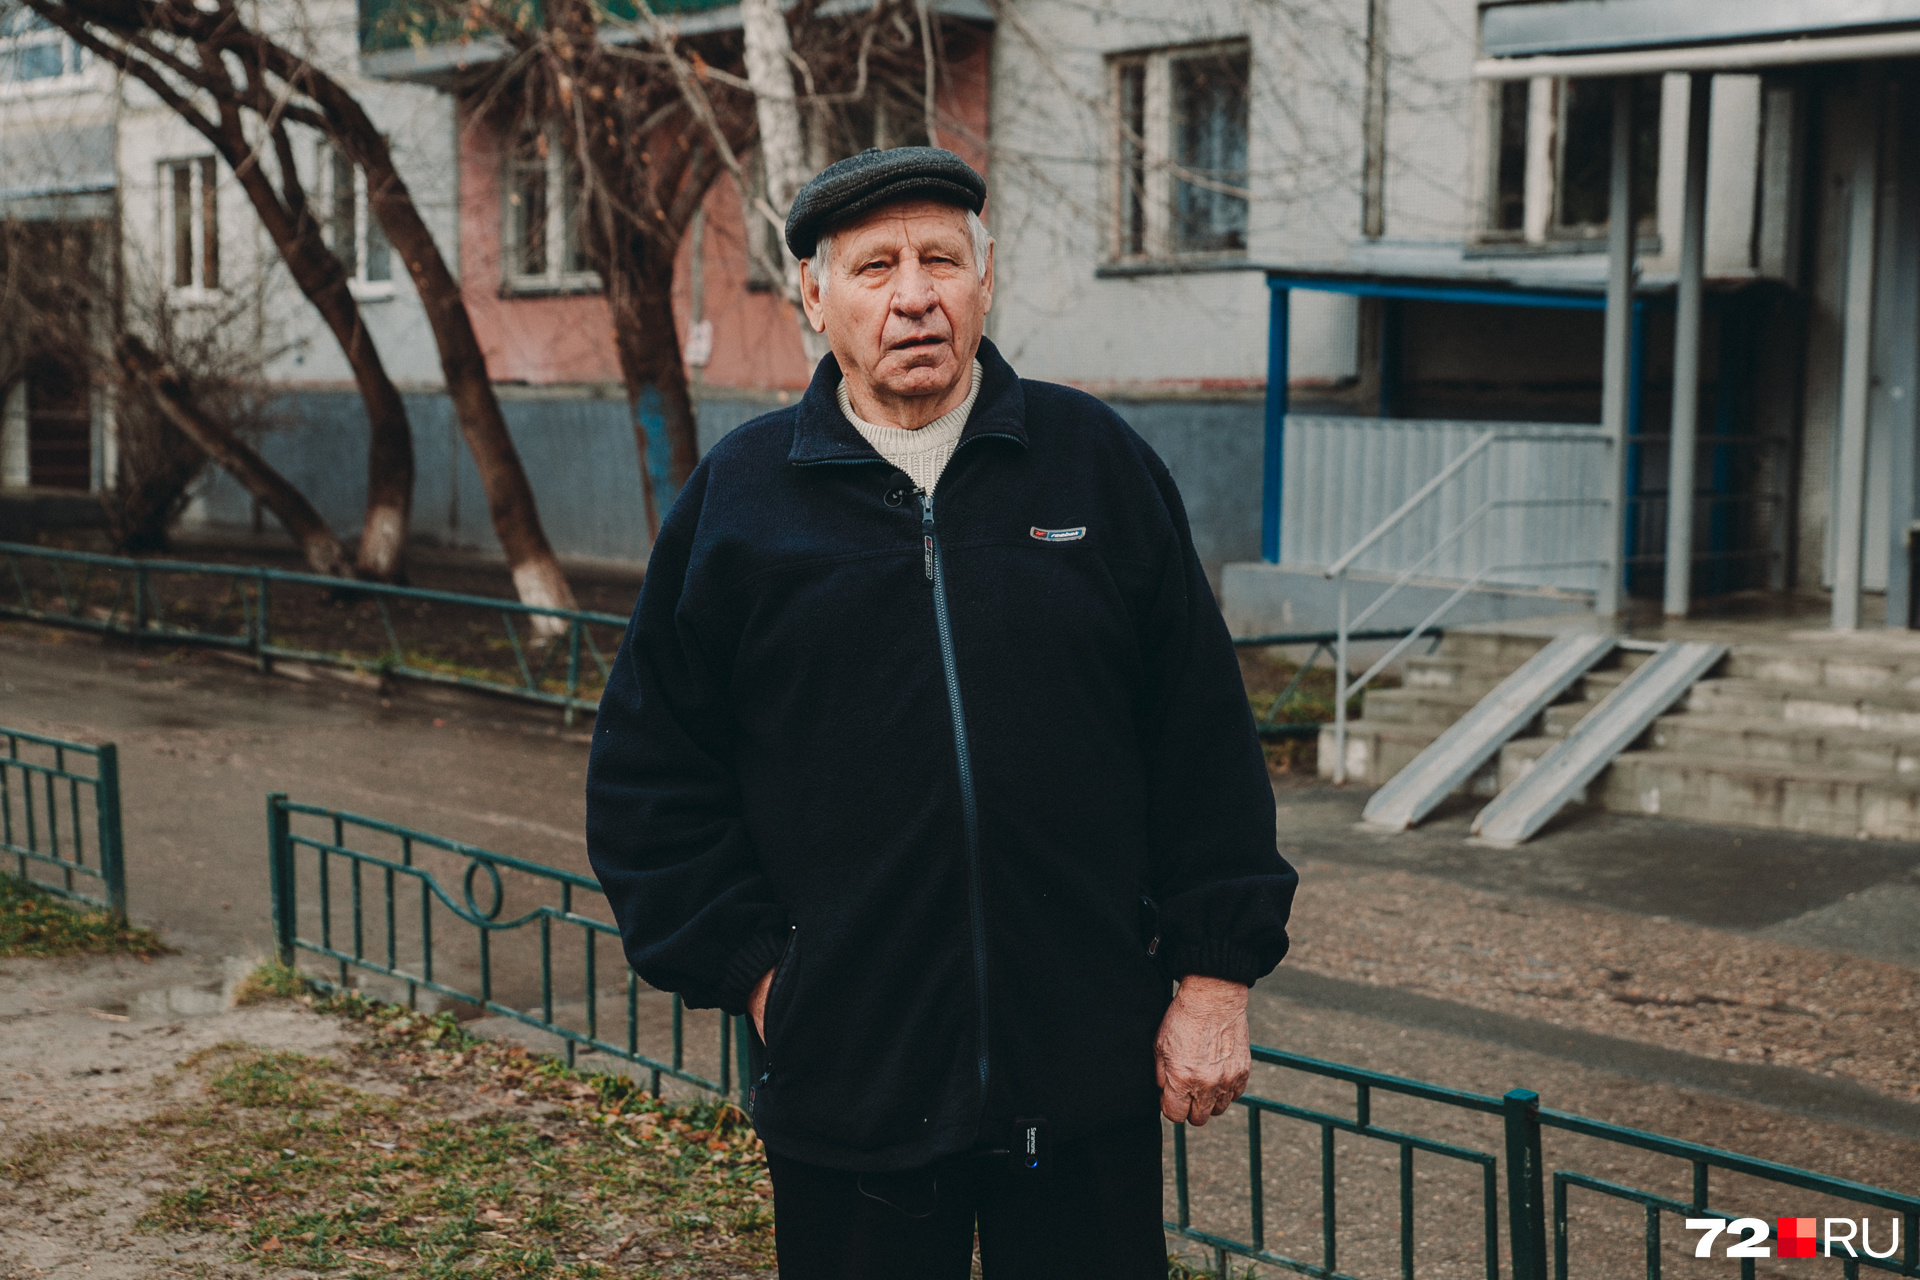 У Петра Ячева в Болгарии живут братья и сестры. Раньше он ездил домой каждый год — в отпуск, но в последние годы бывает в Болгарии всё реже